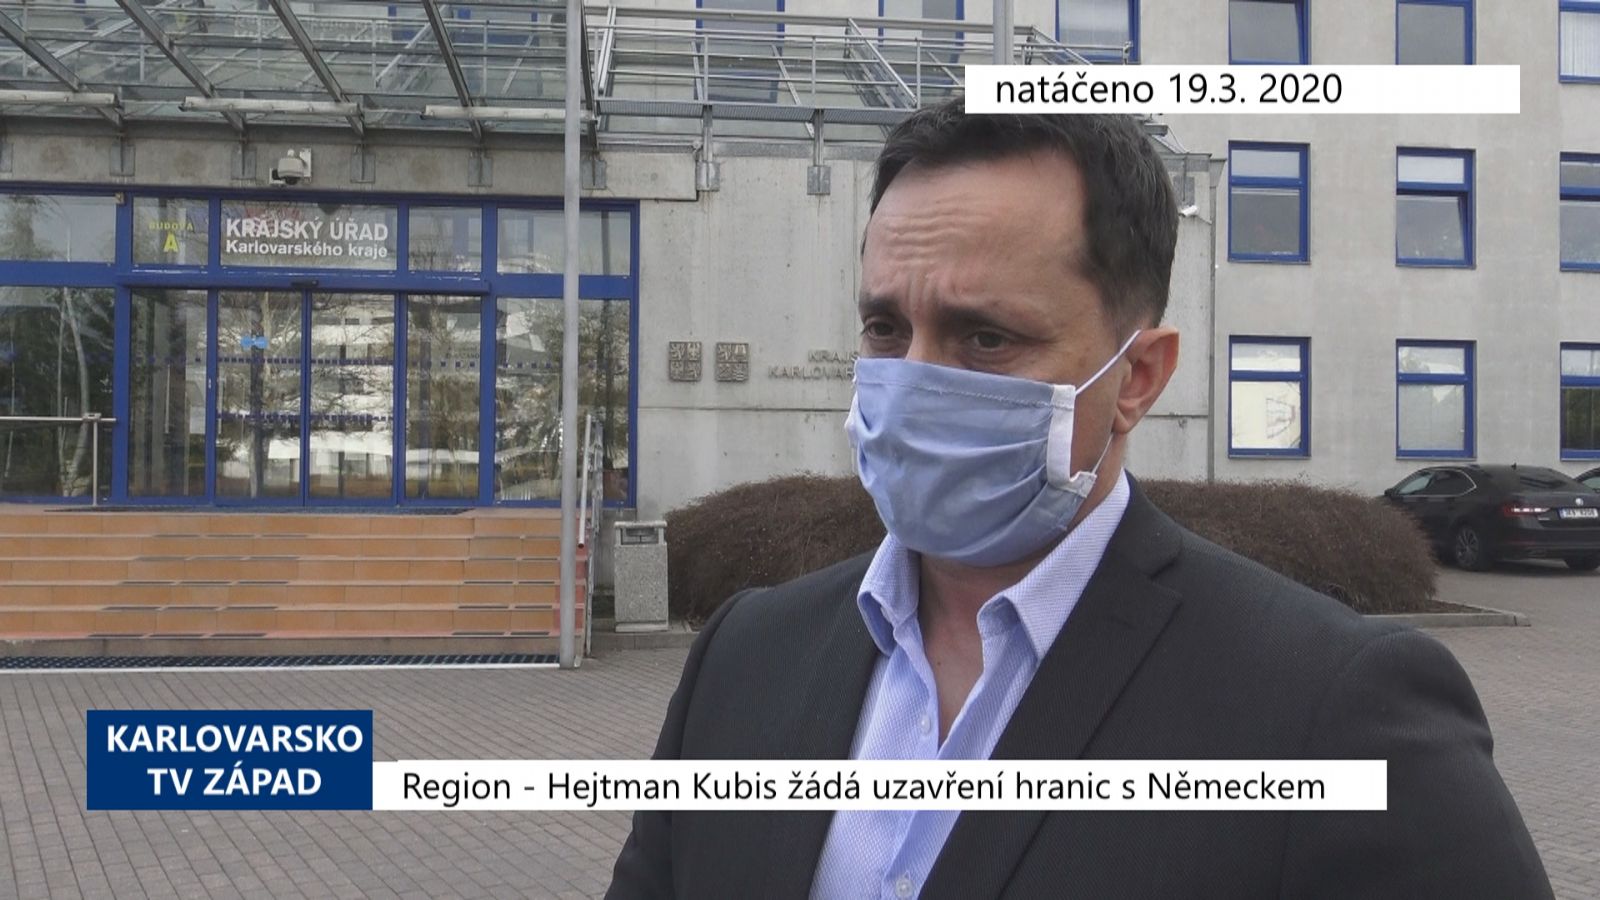 Region: Hejtman žádá uzavření hranic s Německem (TV Západ)